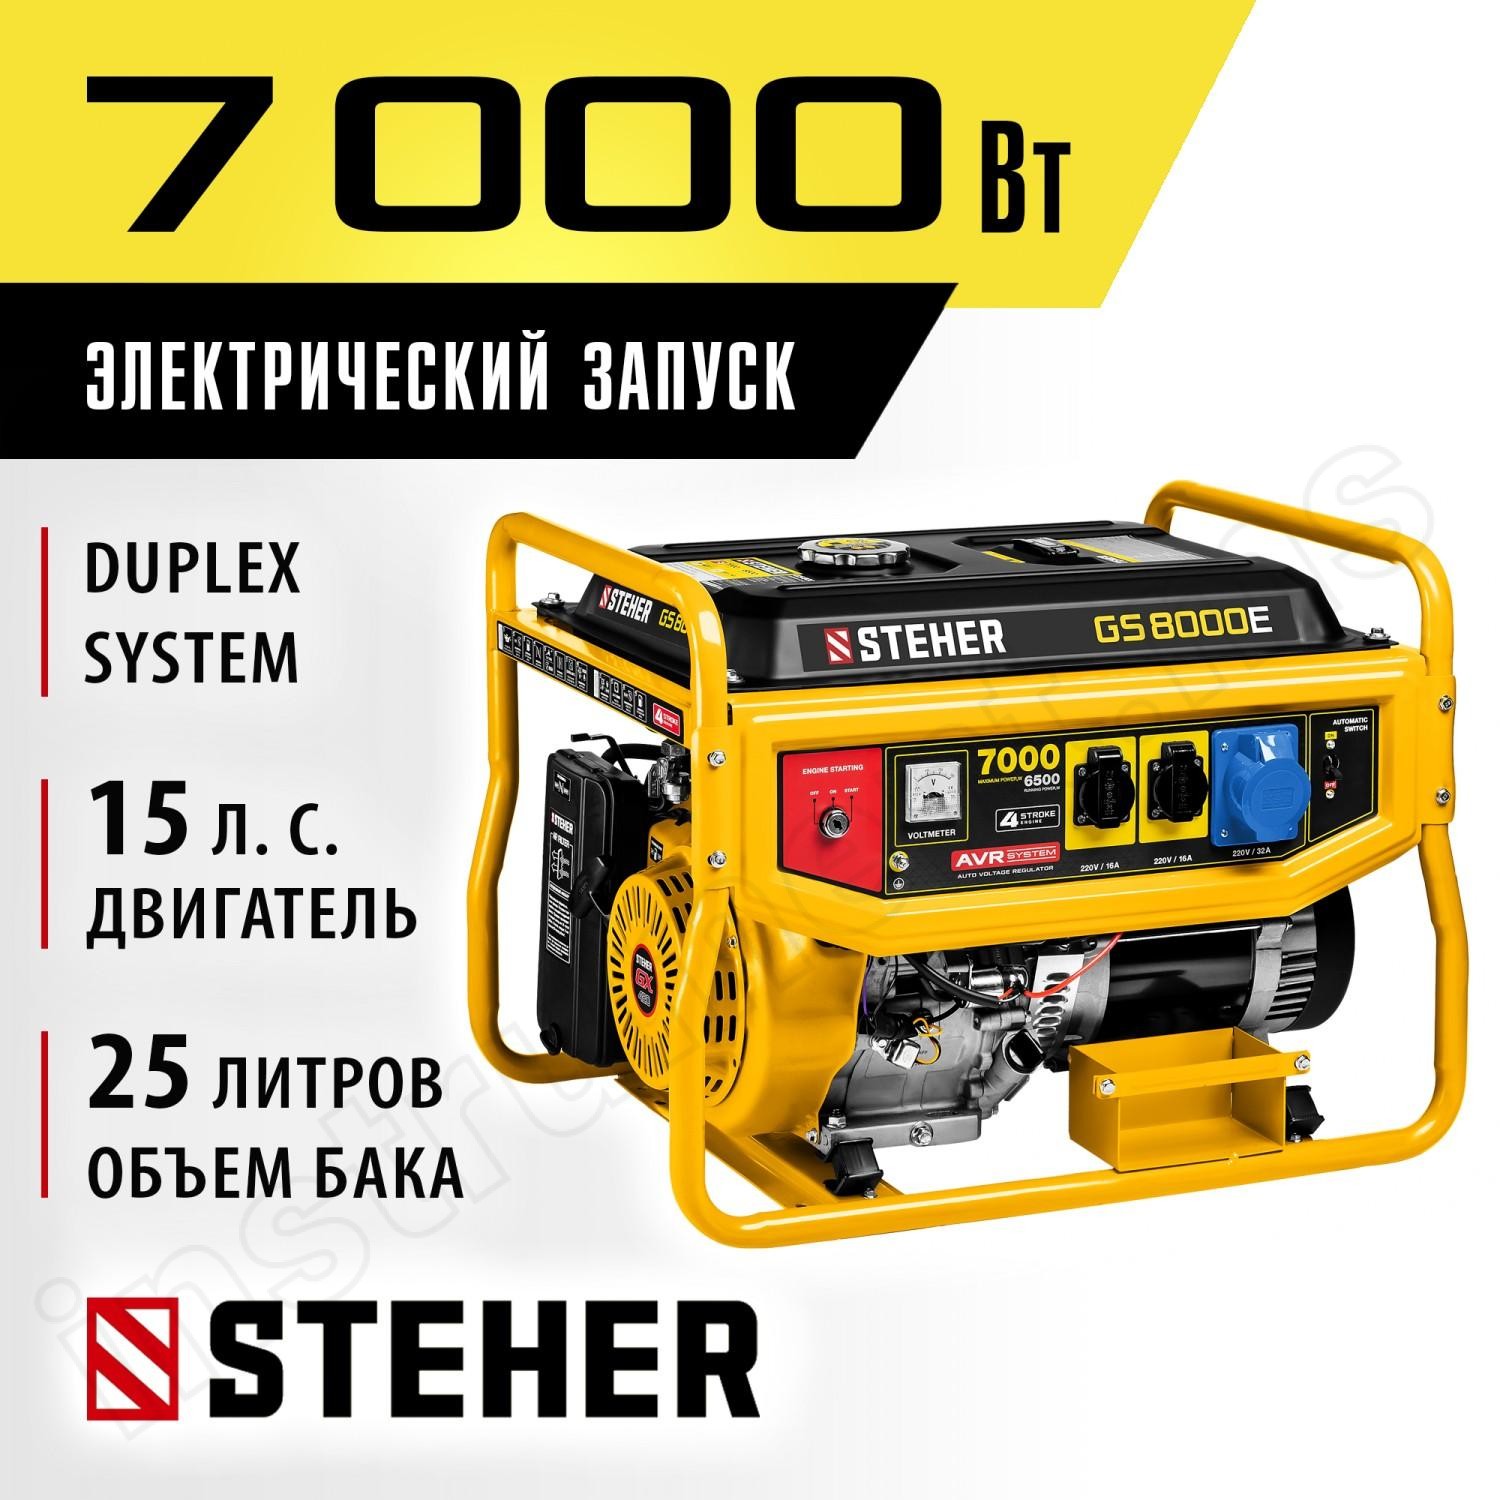 STEHER  7000 Вт, бензиновый генератор с электростартером (GS-8000E) - фото 2